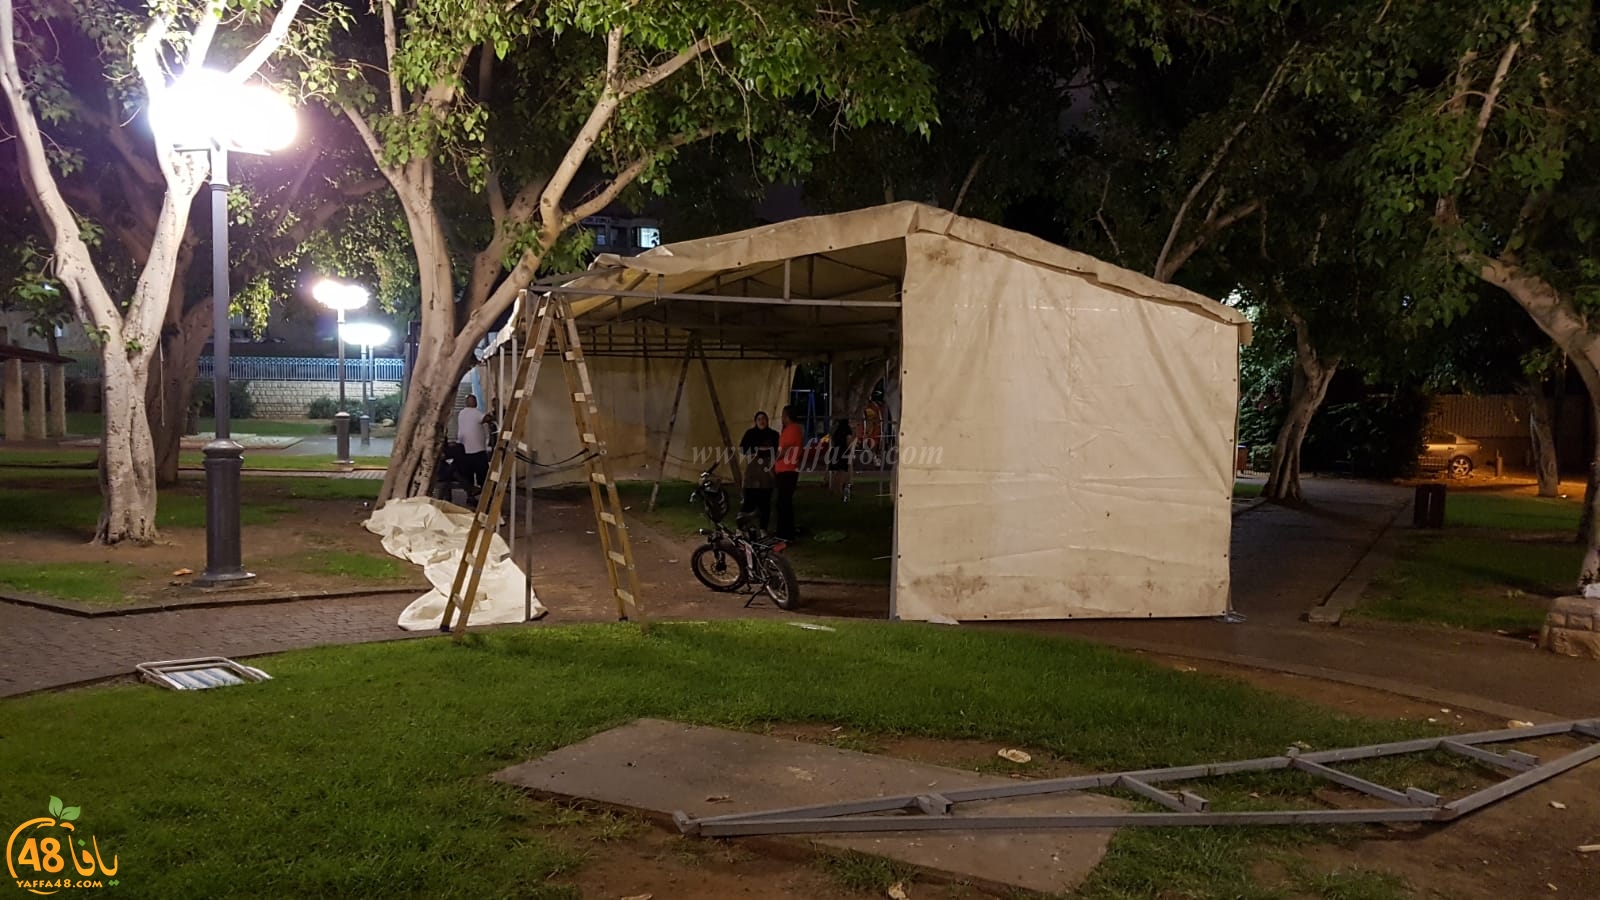  فيديو: عائلة يافية تُلقى في الشارع وتنصب خيمة للمبيت فيها احتجاجا على ازمة السكن 